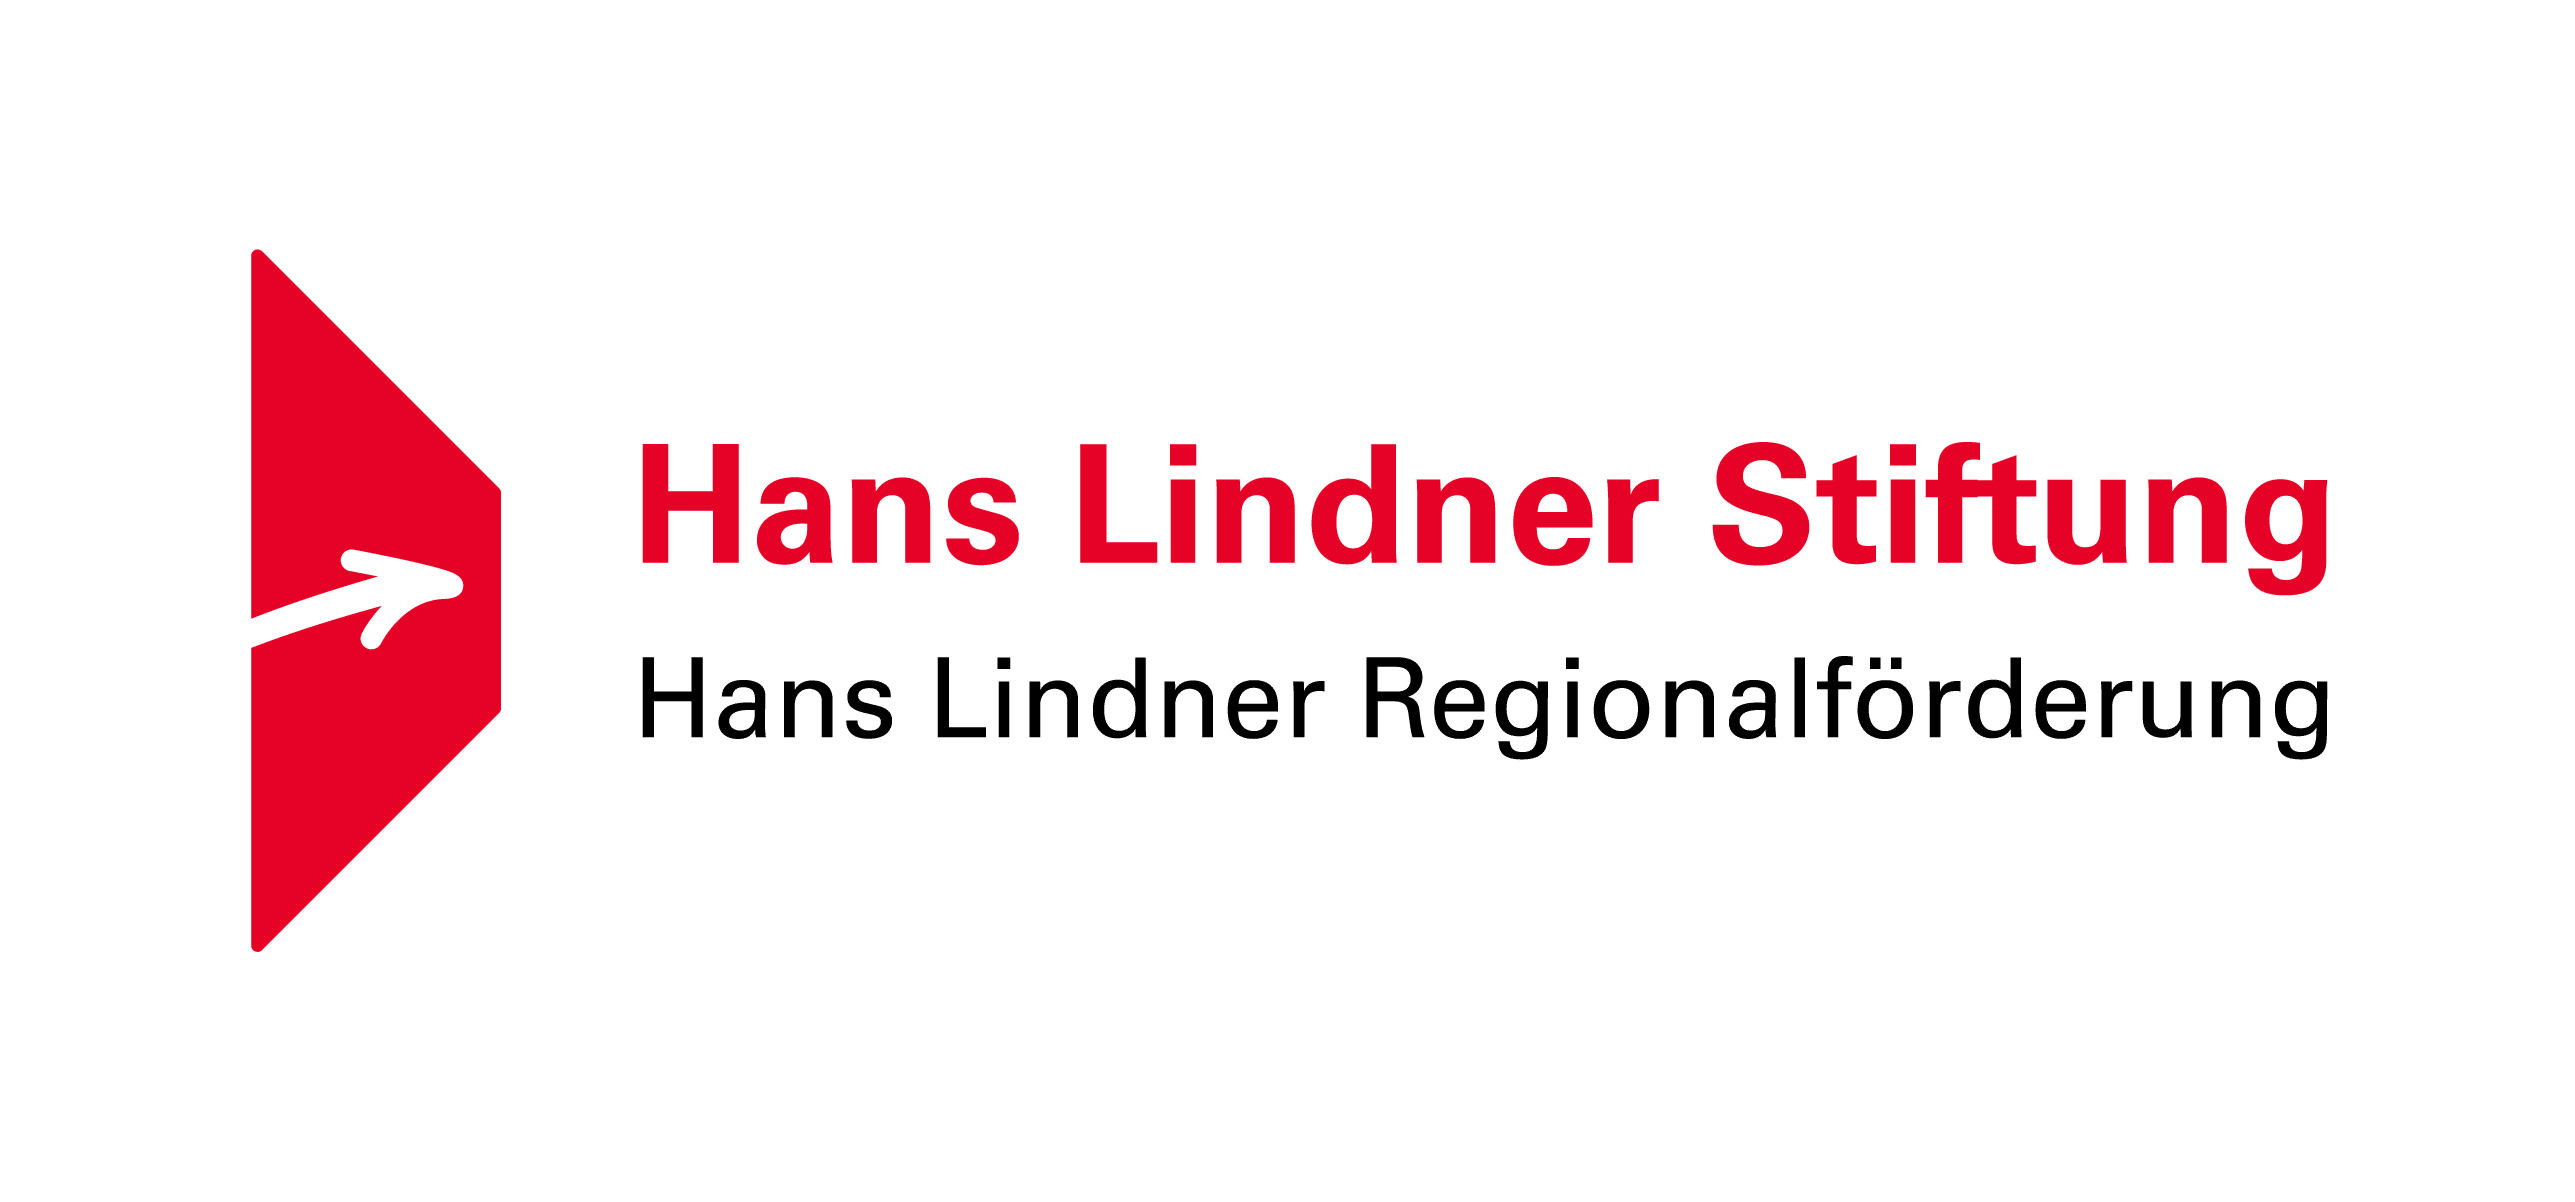 Logo Hans Lindner Stiftung